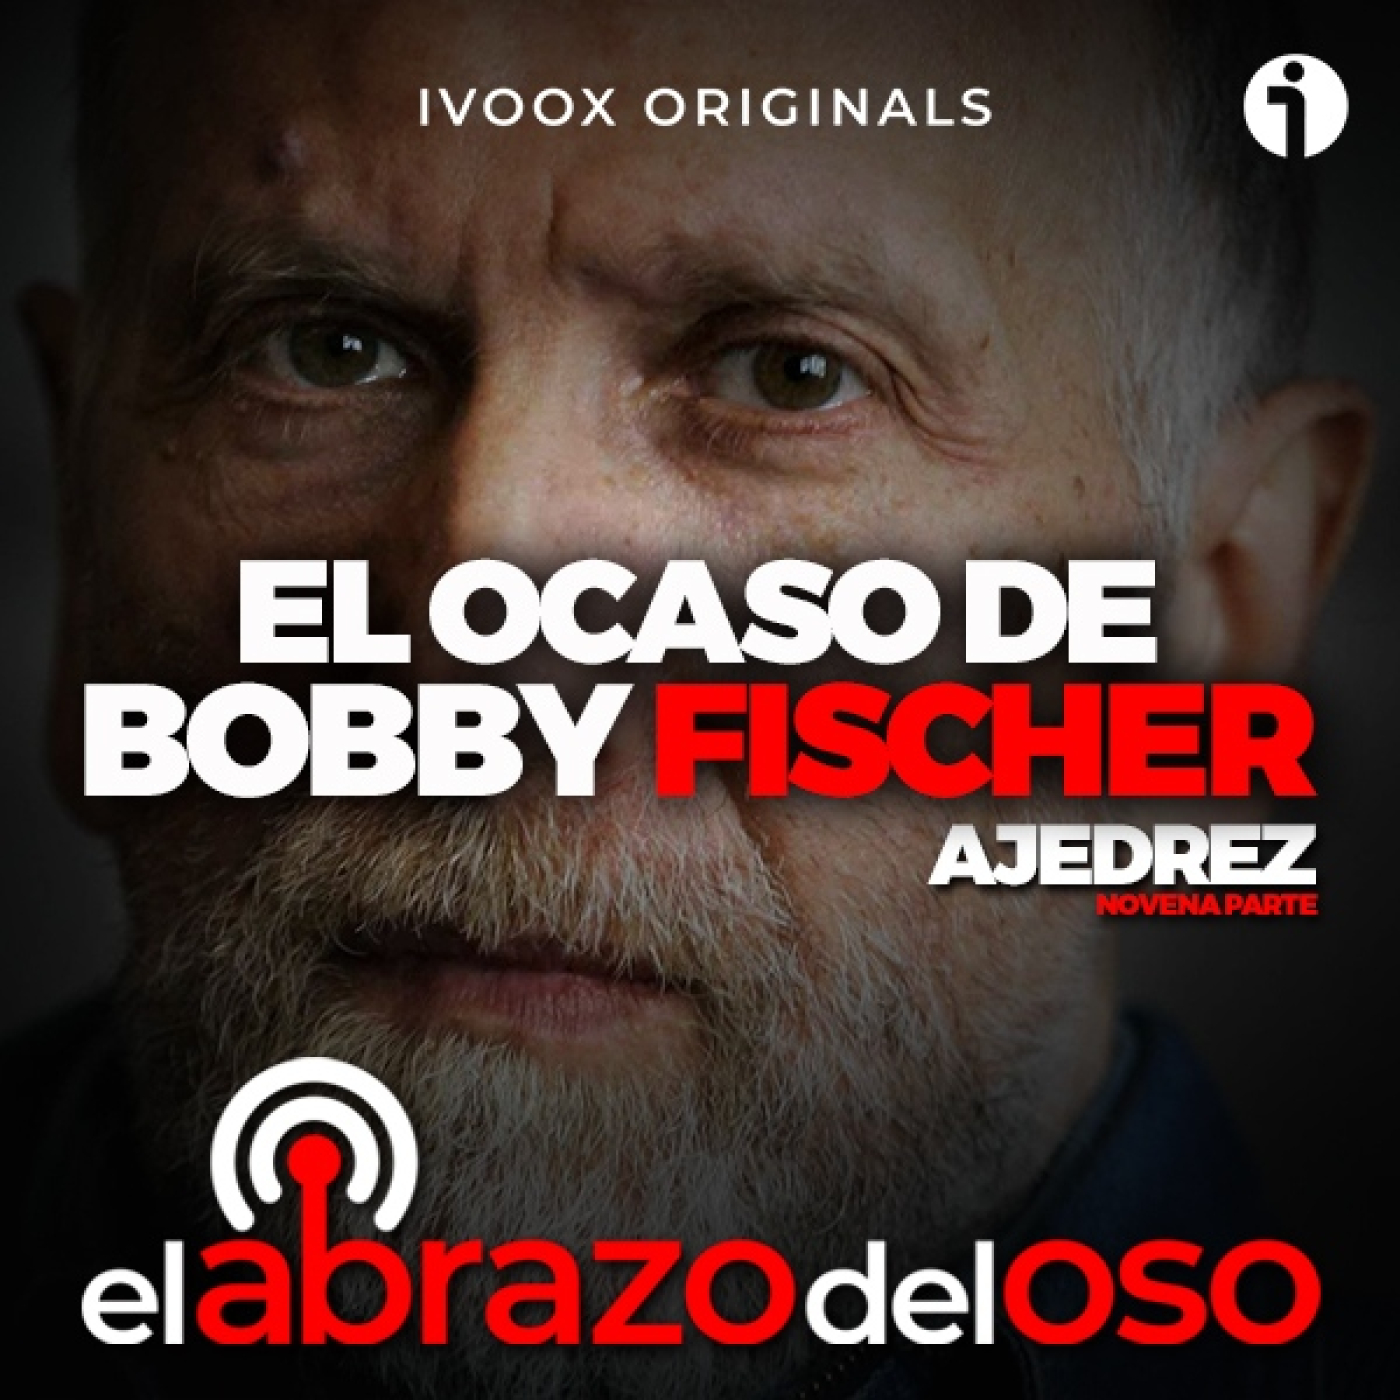 El Ocaso de Bobby Fischer: Ajedrez 9ª Parte – El Abrazo del Oso